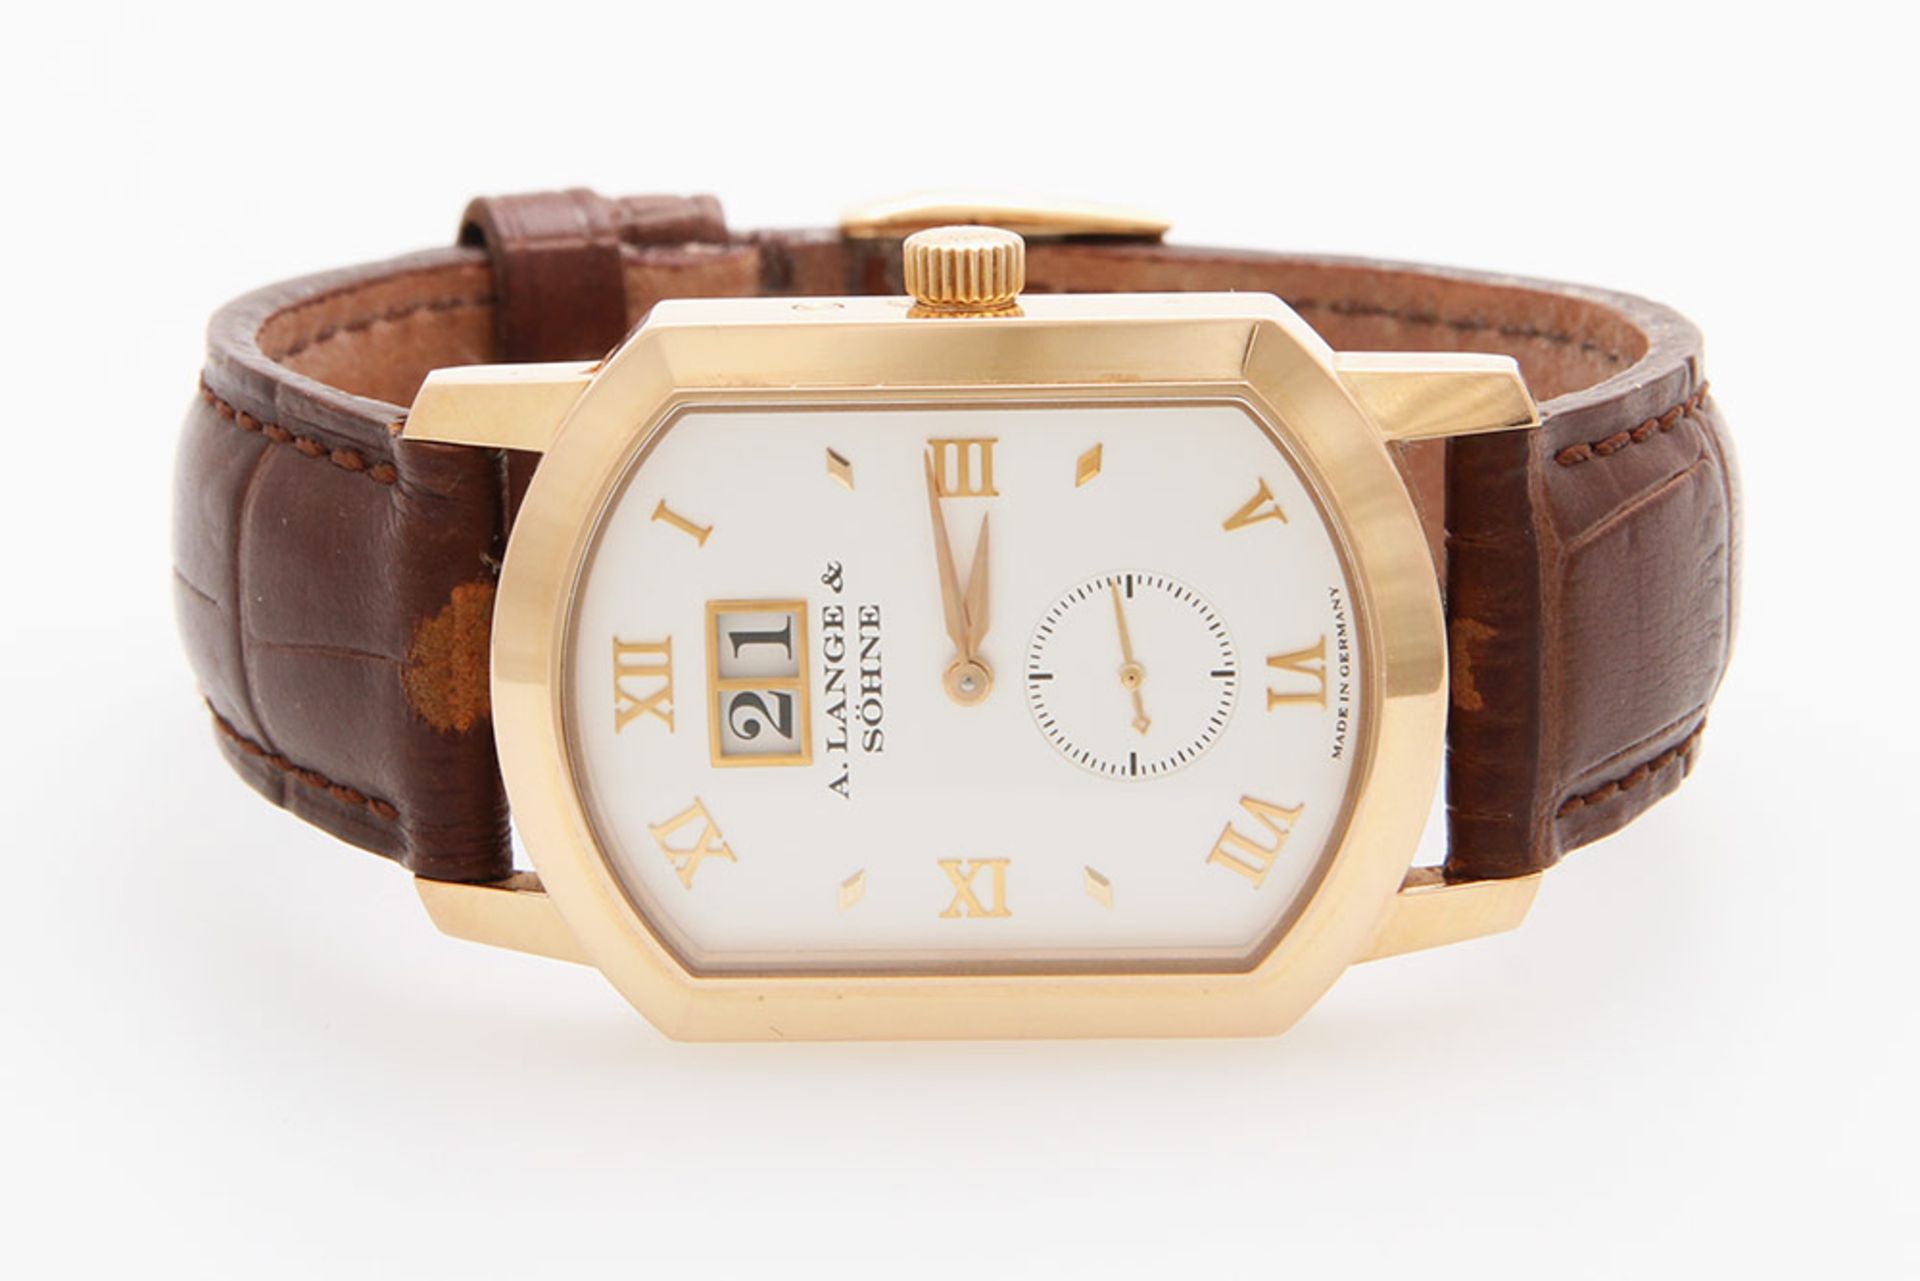 A.LANGE & SÖHNE Armbanduhr "Arkade". Rosé-Gold 18K. Handaufzugwerk, Cal. L 911.4. Lederband (nicht